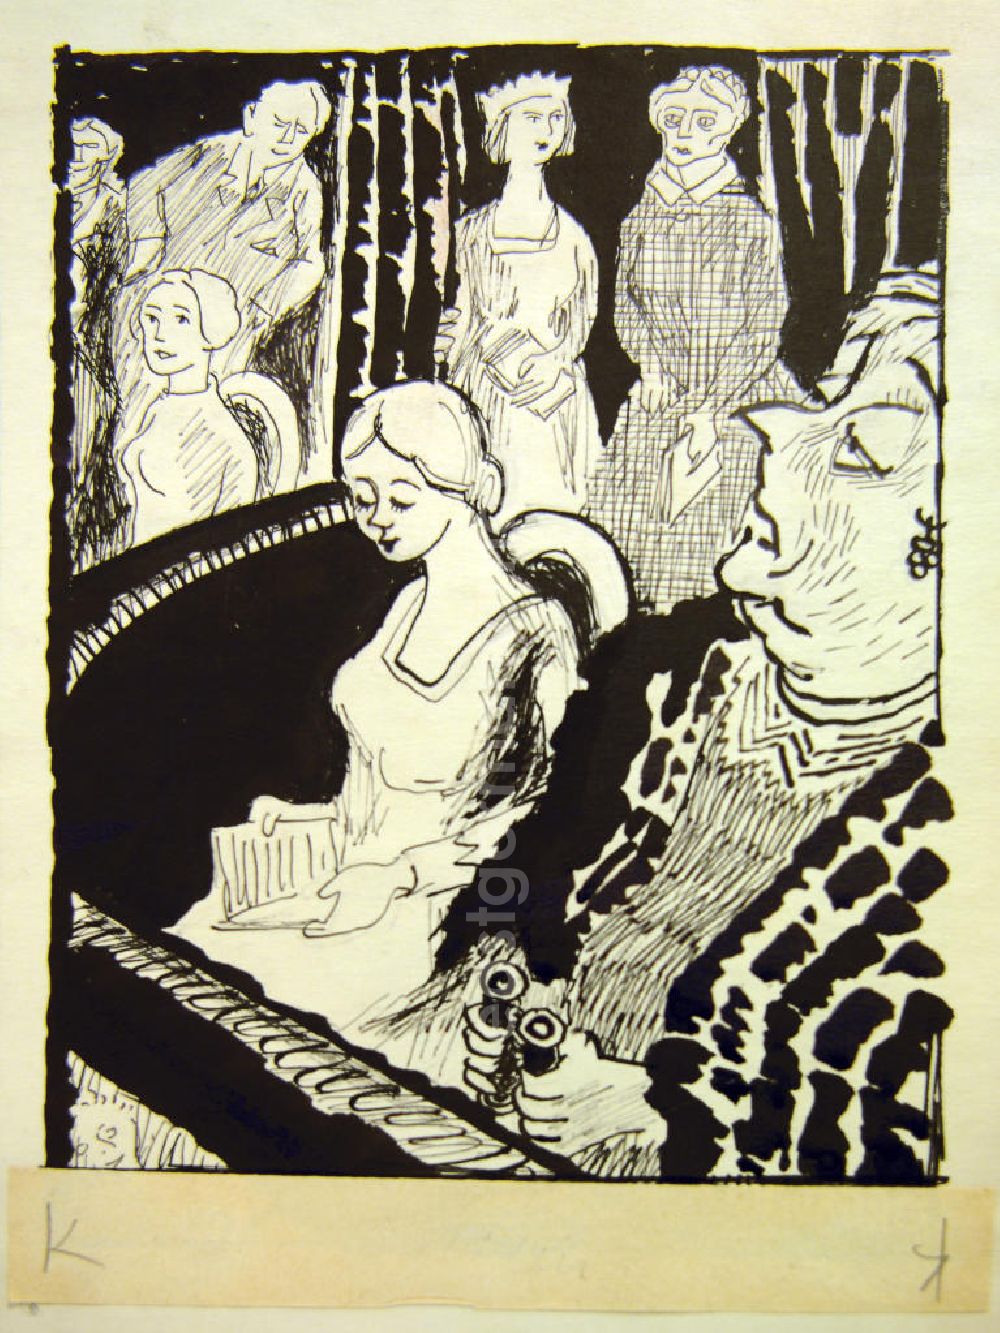 GDR picture archive: Berlin - Zeichnung von Herbert Sandberg Frau Damals (im Theater) 18,0x26,